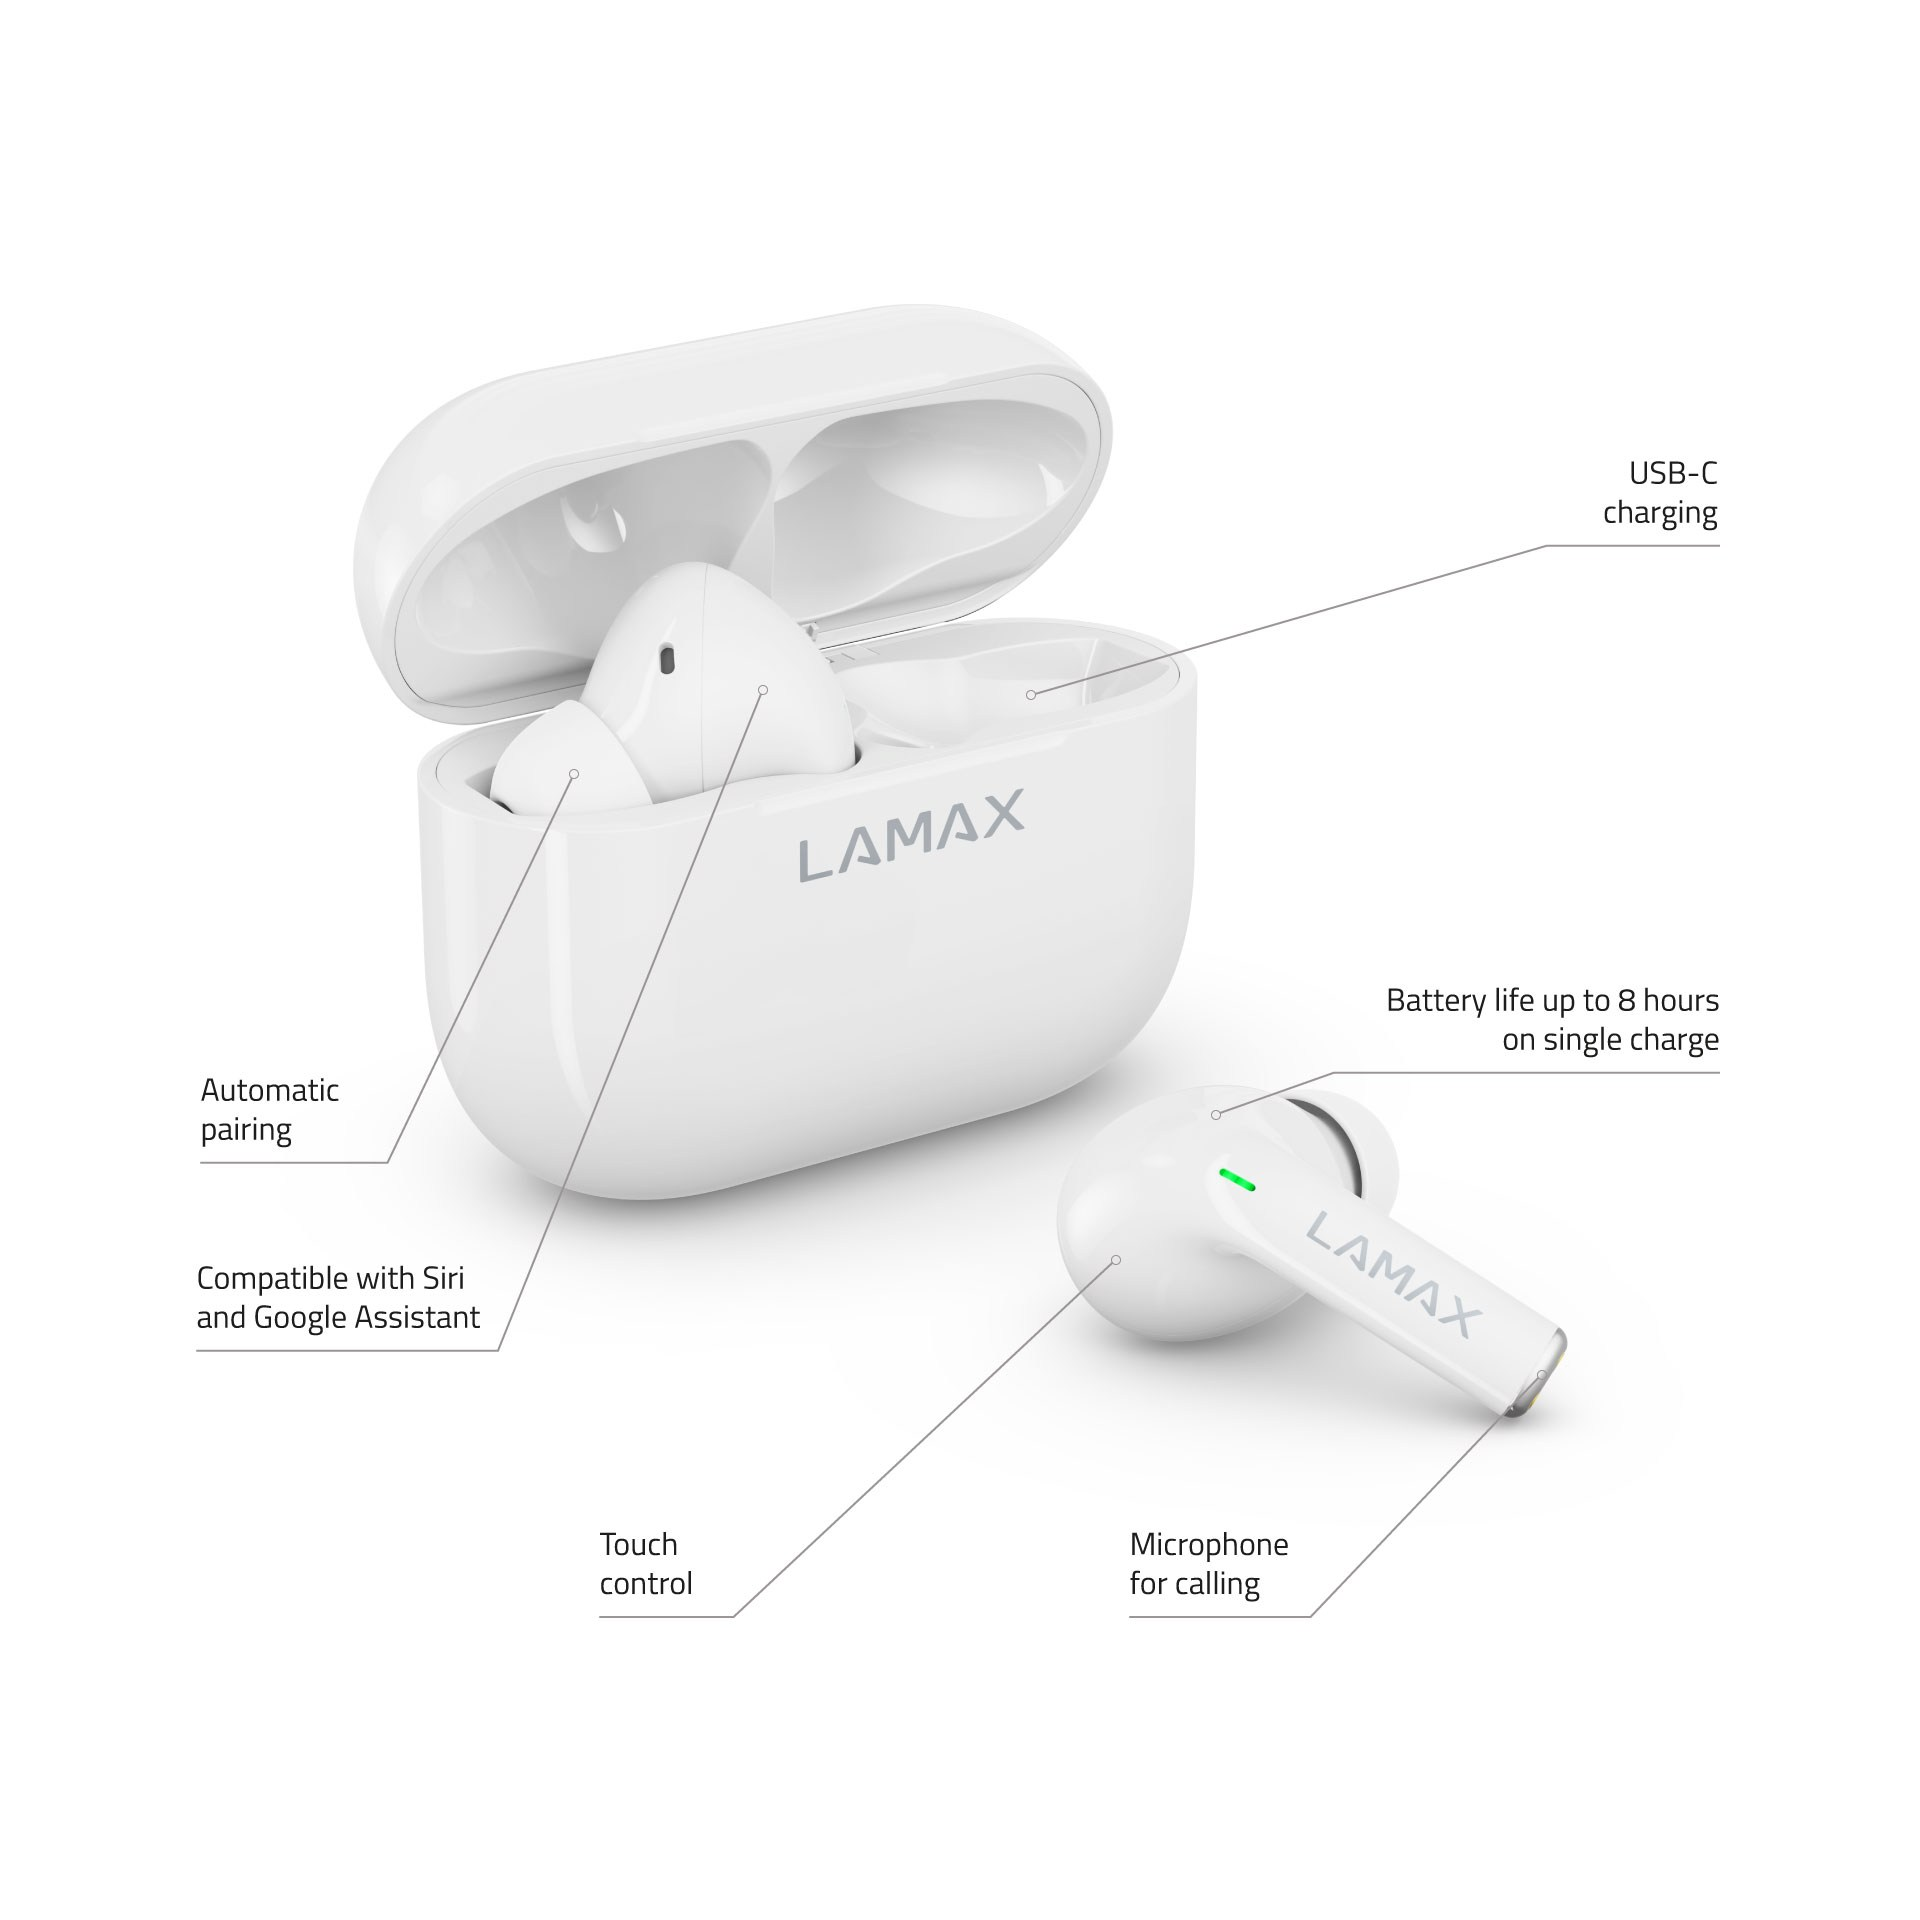 LAMAX Clips1 white, In-ear Kopfhörer Weiss Bluetooth